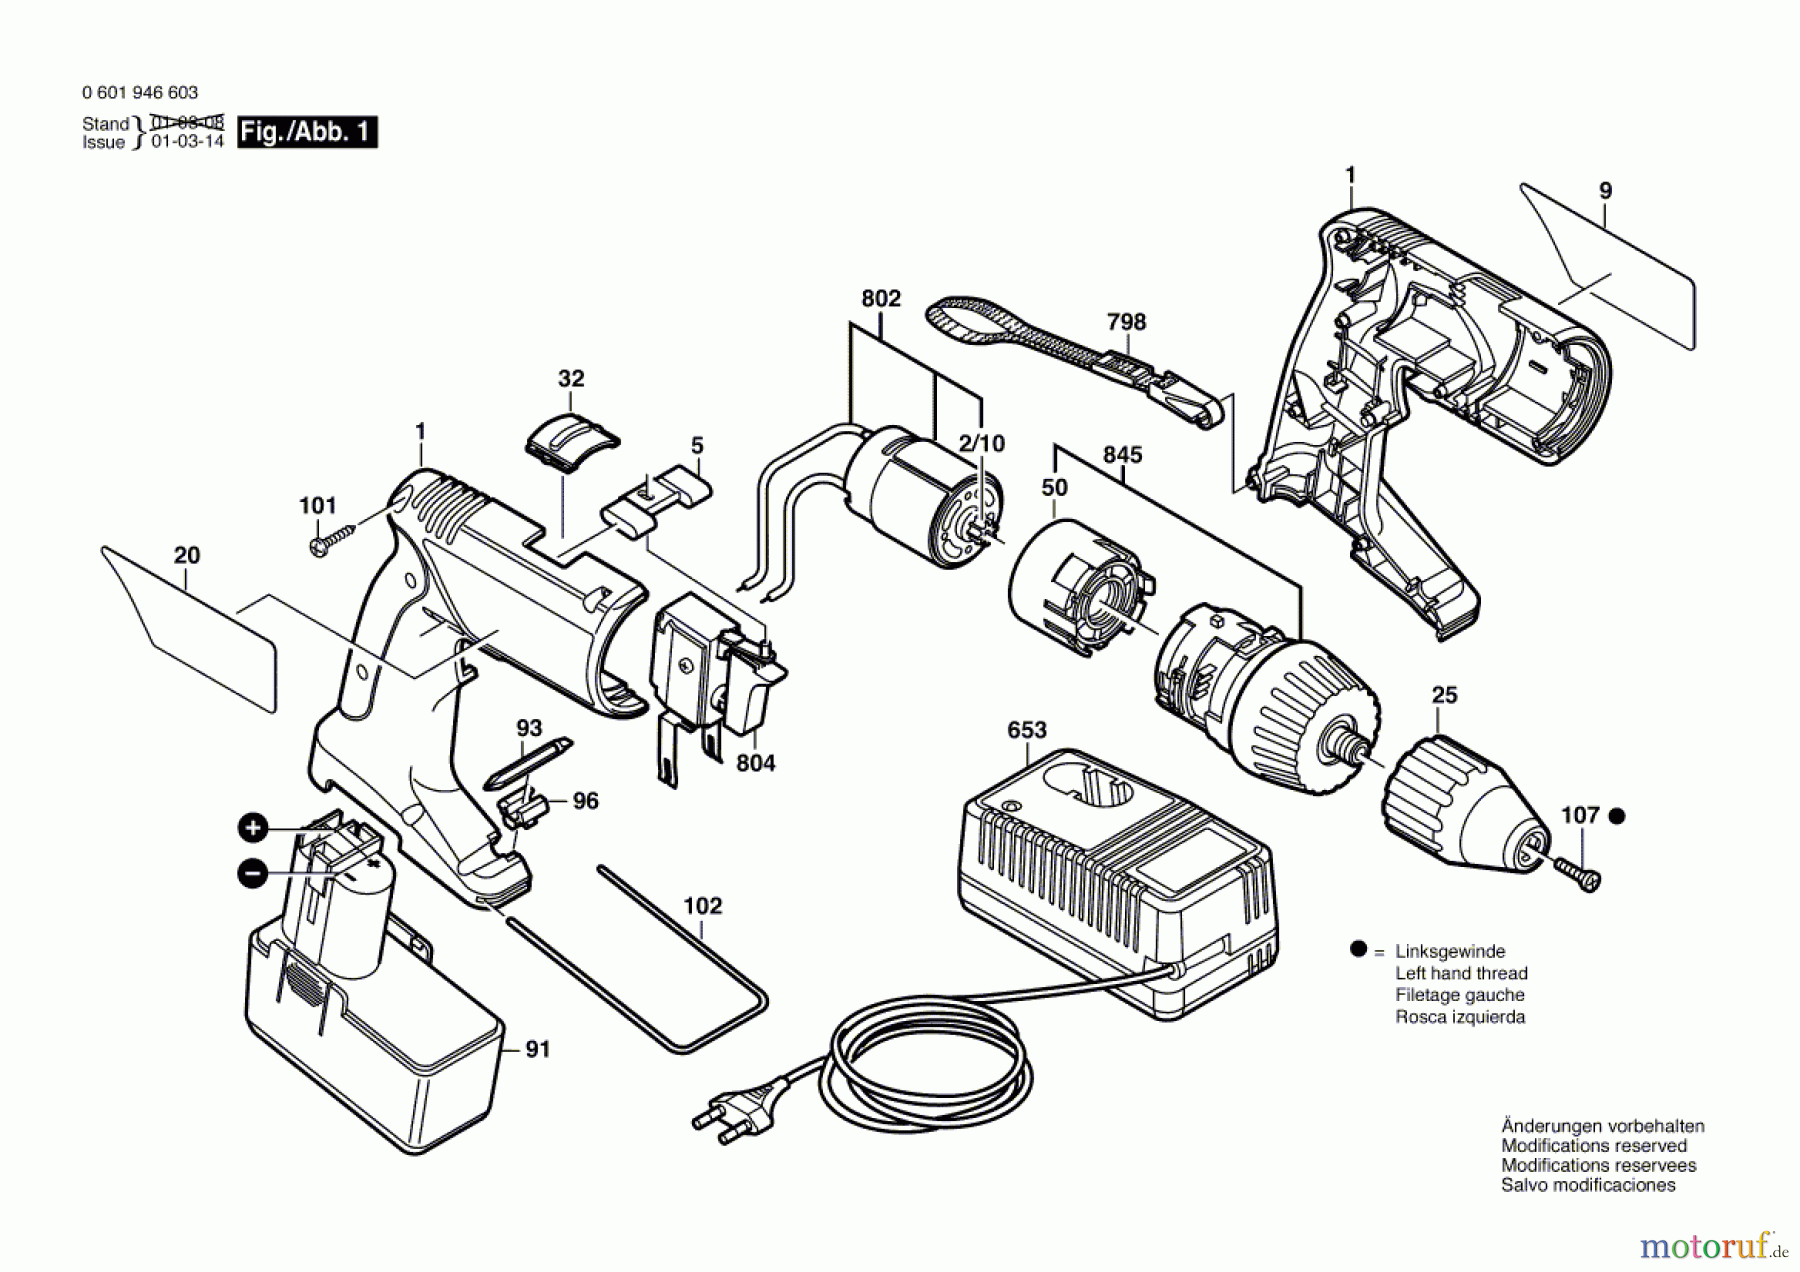  Bosch Akku Werkzeug Akku-Bohrschrauber GSR 9,6 VPE-2 Seite 1